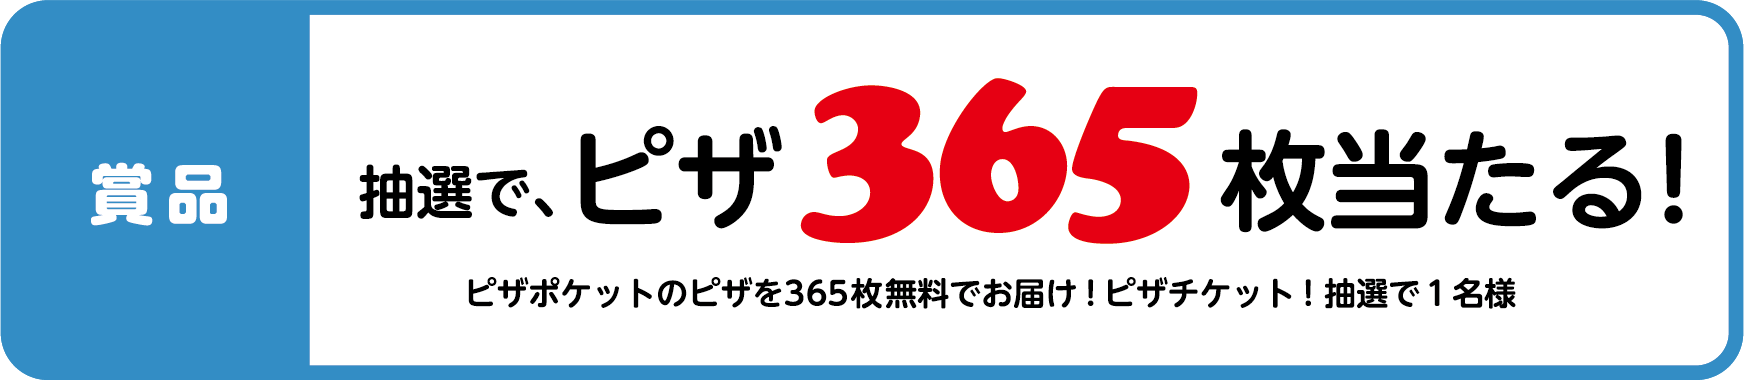 第一弾9/1(木)〜10/31(月)Twitterハッシュタグキャンペーン